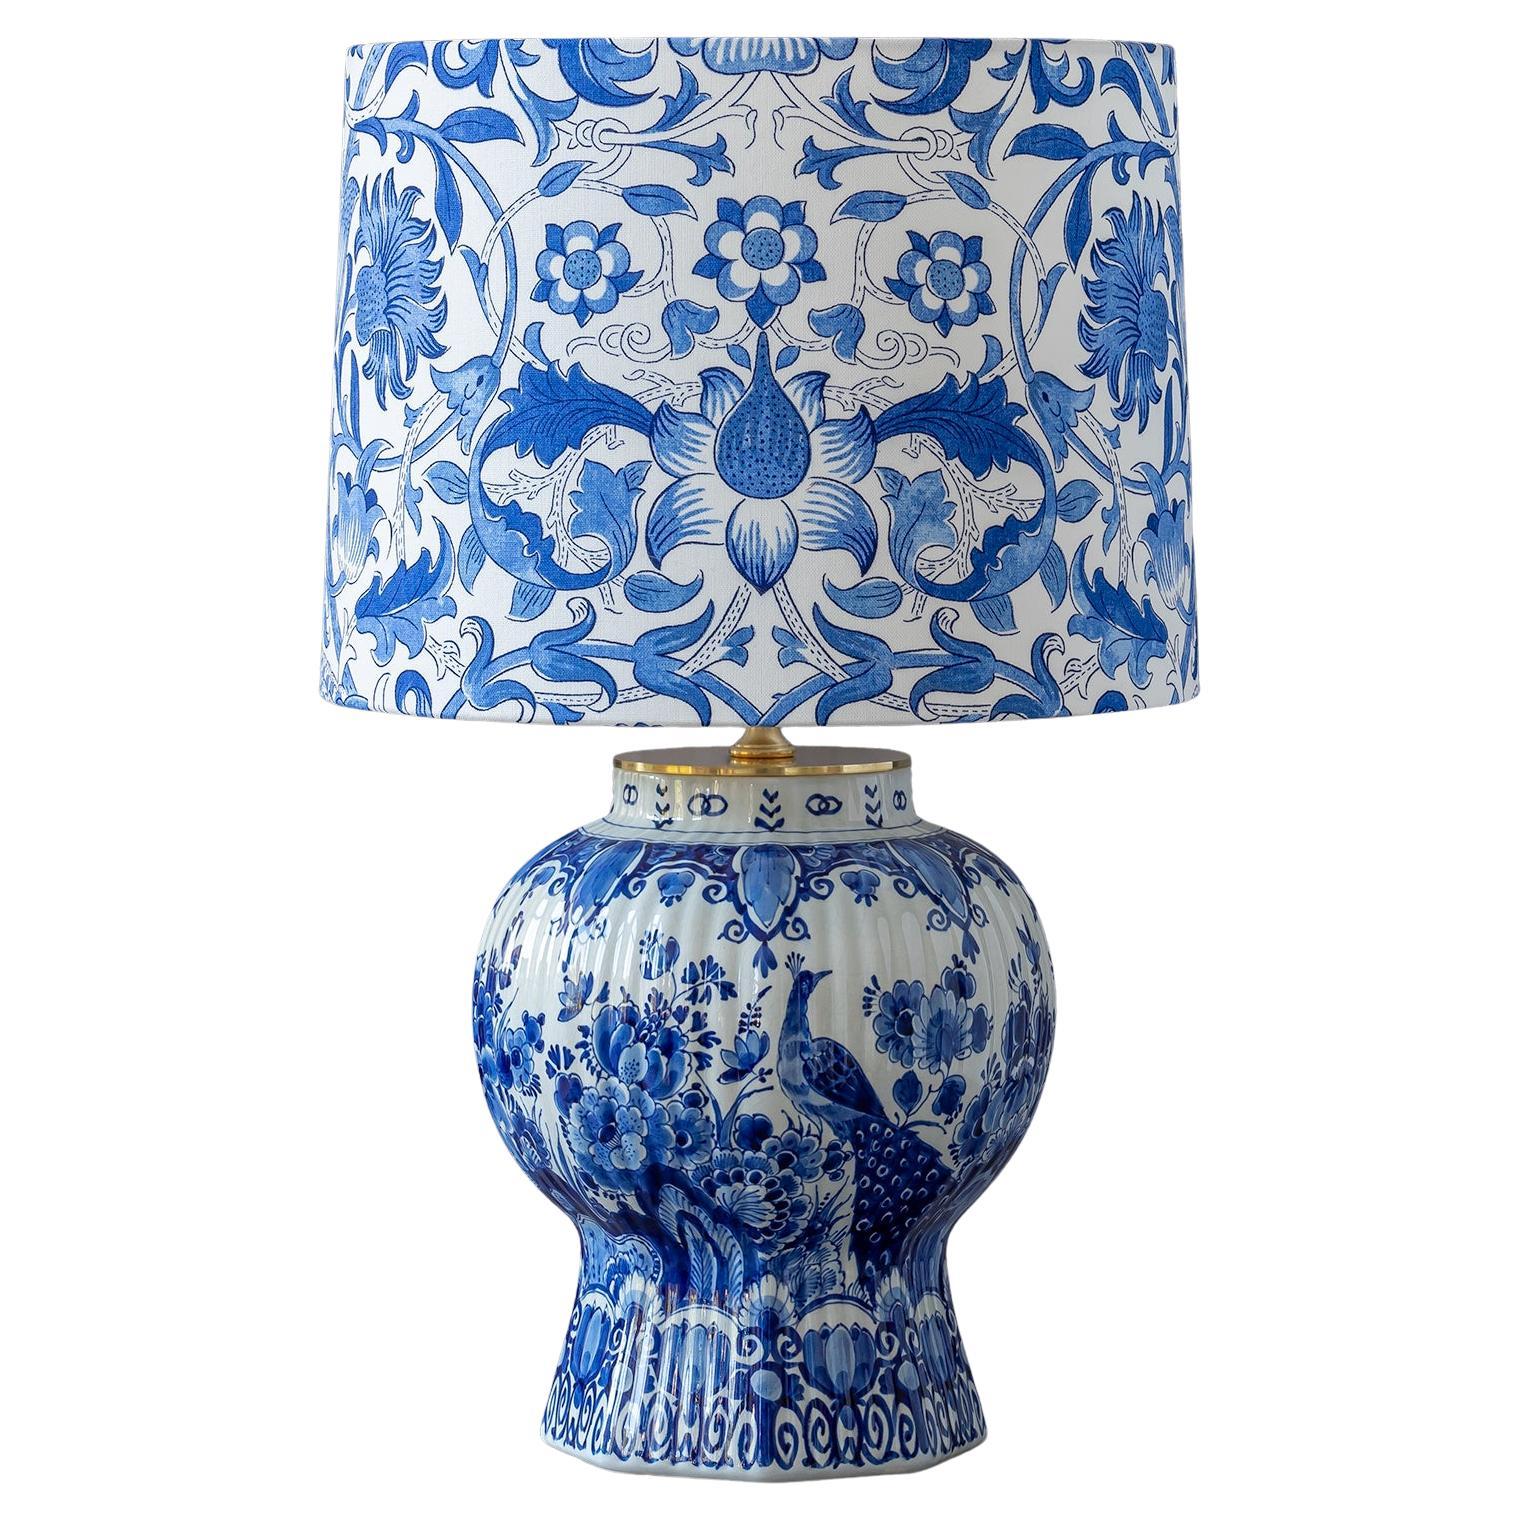 Lampe de bureau Royal Delft bleue 1940, abat-jour William Morris